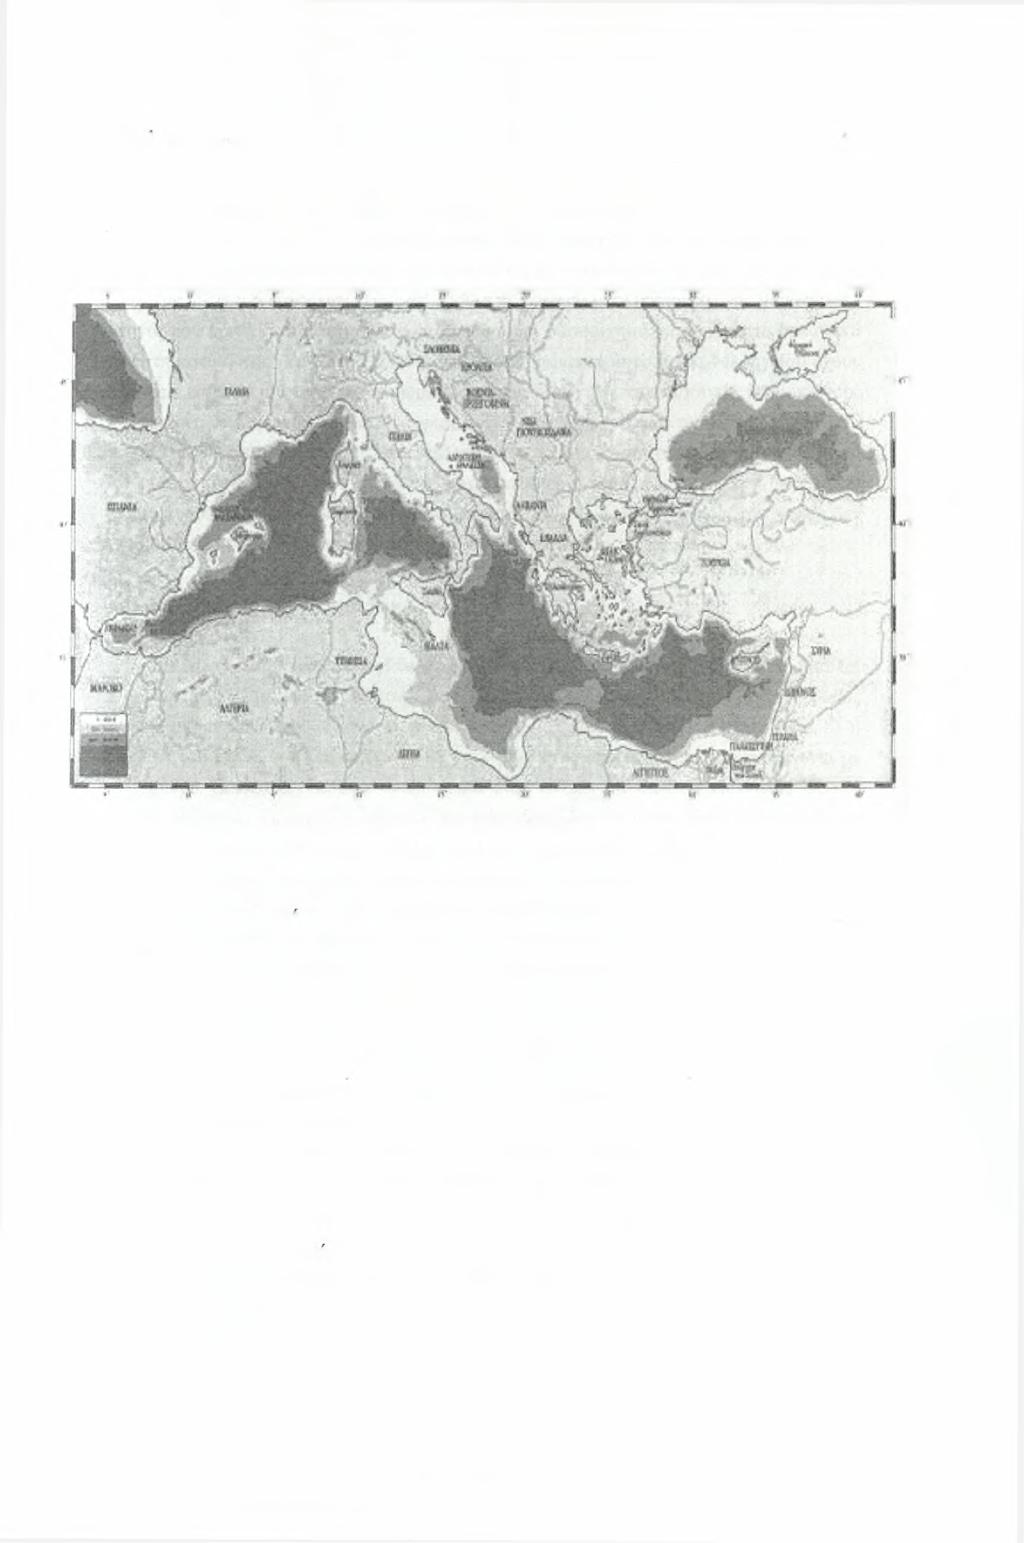 Κεφά/Mio 1 - Εισαγωγή - 14- μέγιστη απόσταση μεταξύ των χερσαίων τμημάτων της δεν είναι μεγαλύτερη από 800km (μεταξύ Γένοβας & Τυνησίας). Εικόνα 1.1.4.1: Η Μεσόγειος και οι διαφορετικές θαλάσσιες περιοχές της από Φραντζή (1996).